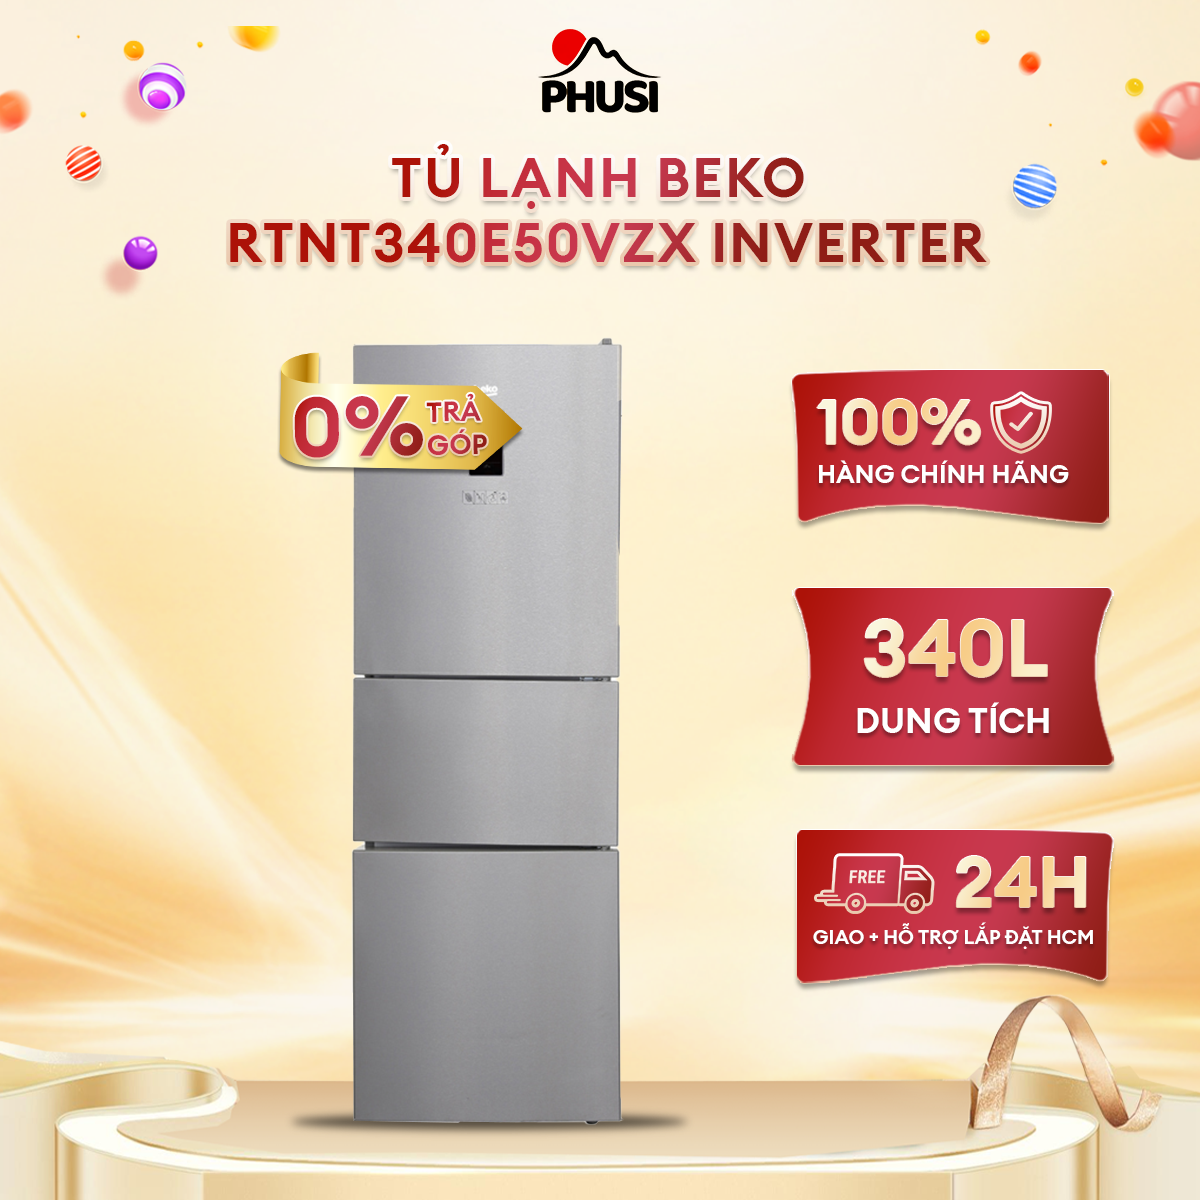 [Trả góp 0%]Tủ lạnh Beko RTNT340E50VZX 340L Inverter